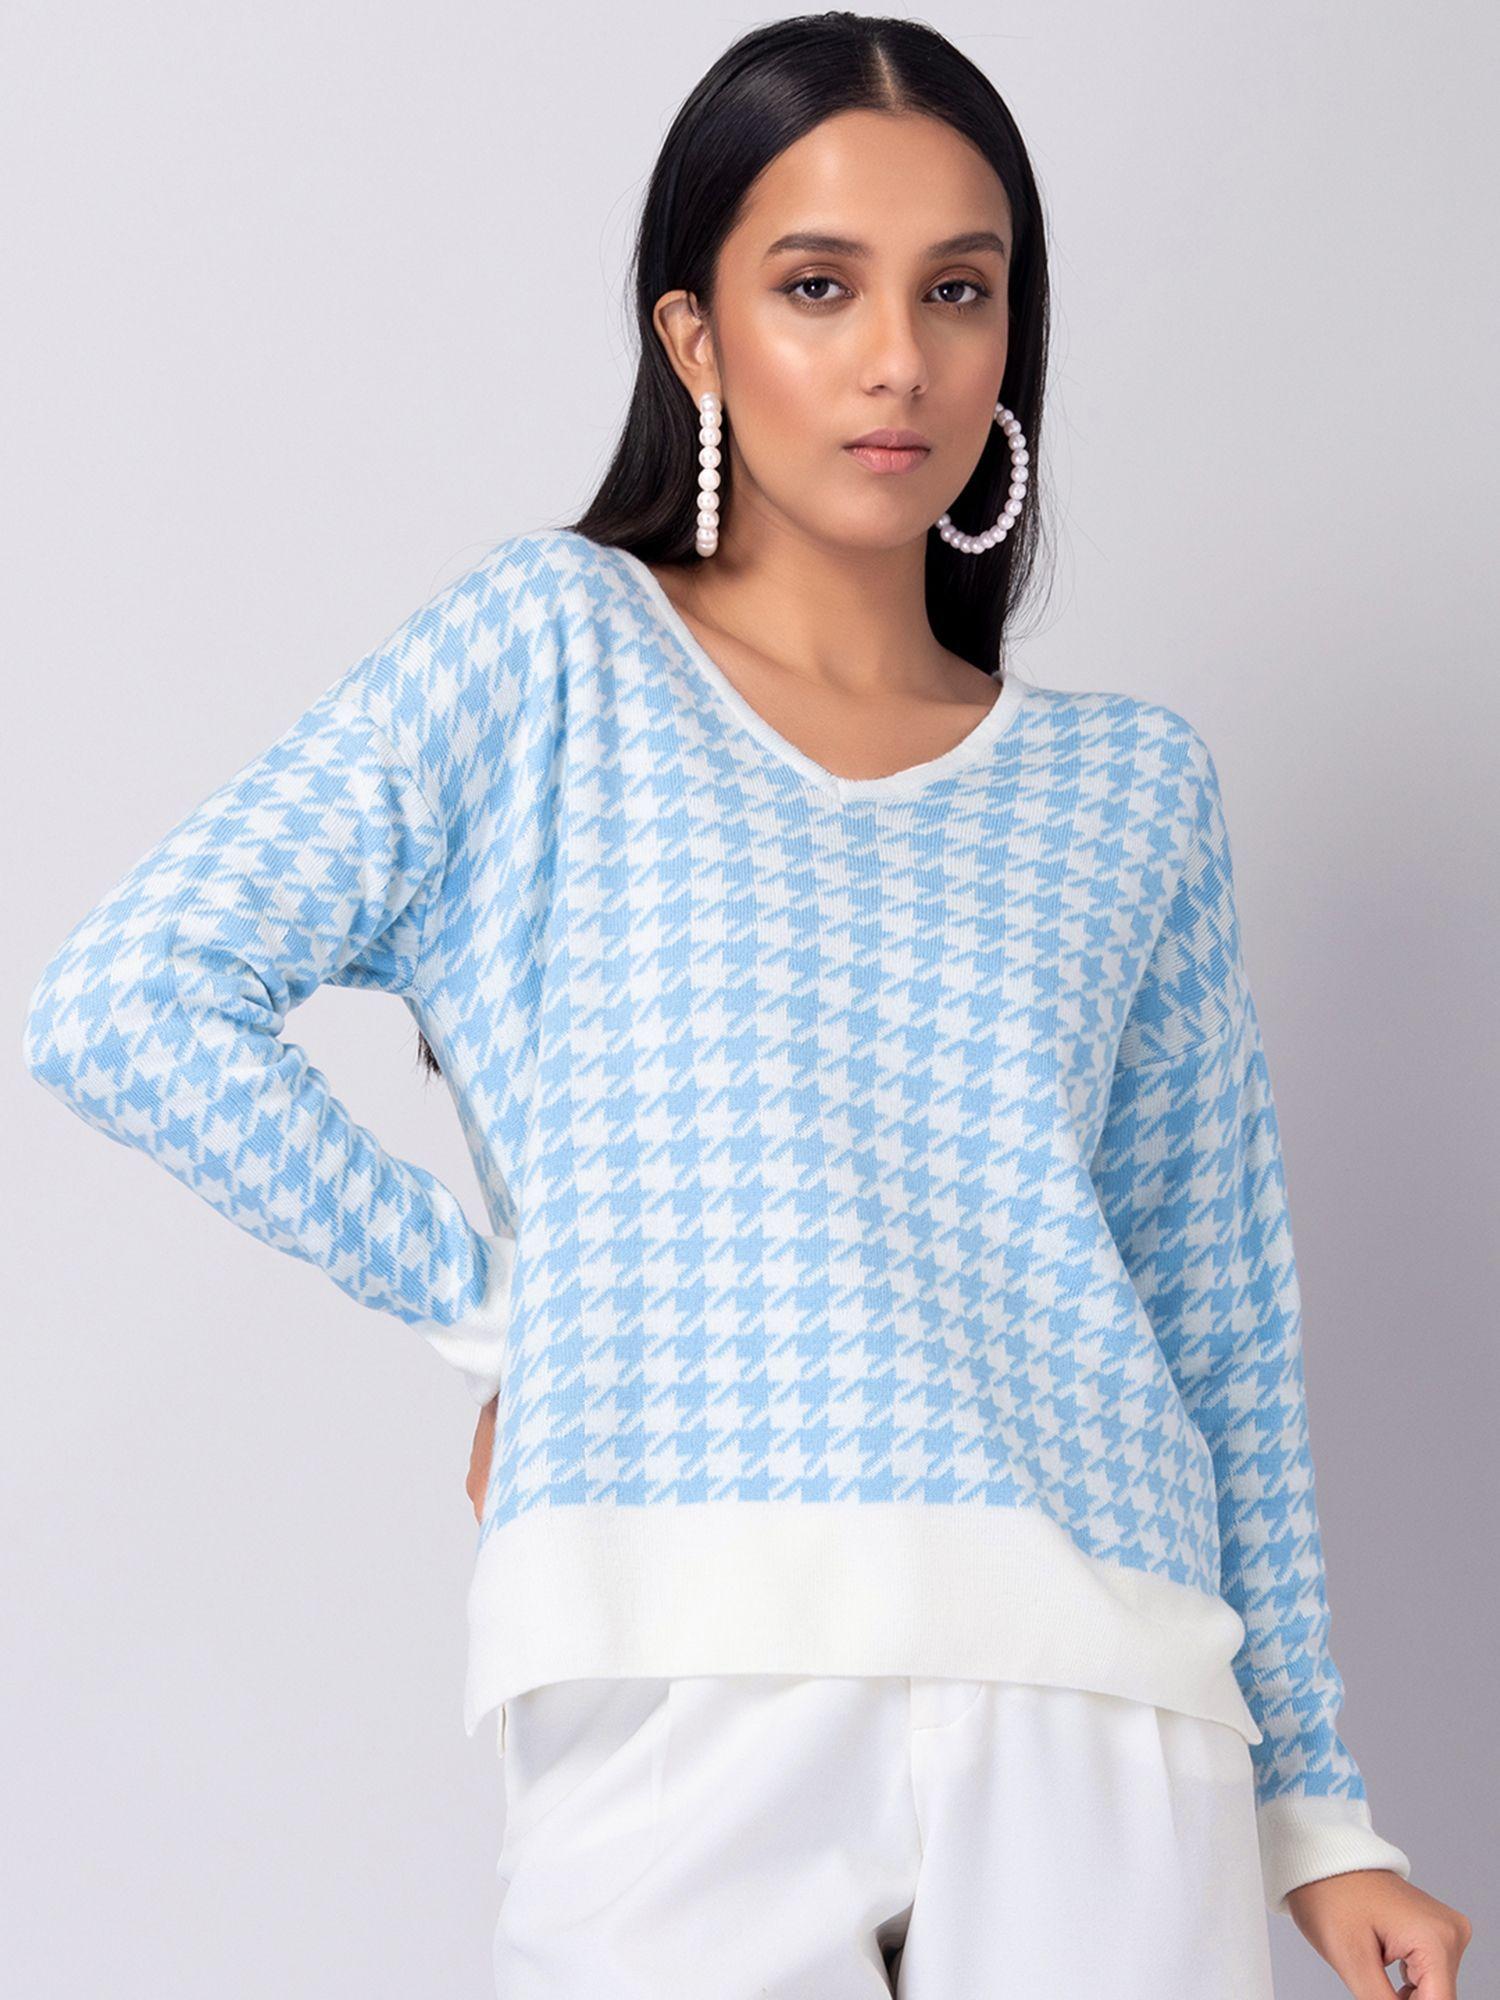 blue and white herringbone jumper sweater